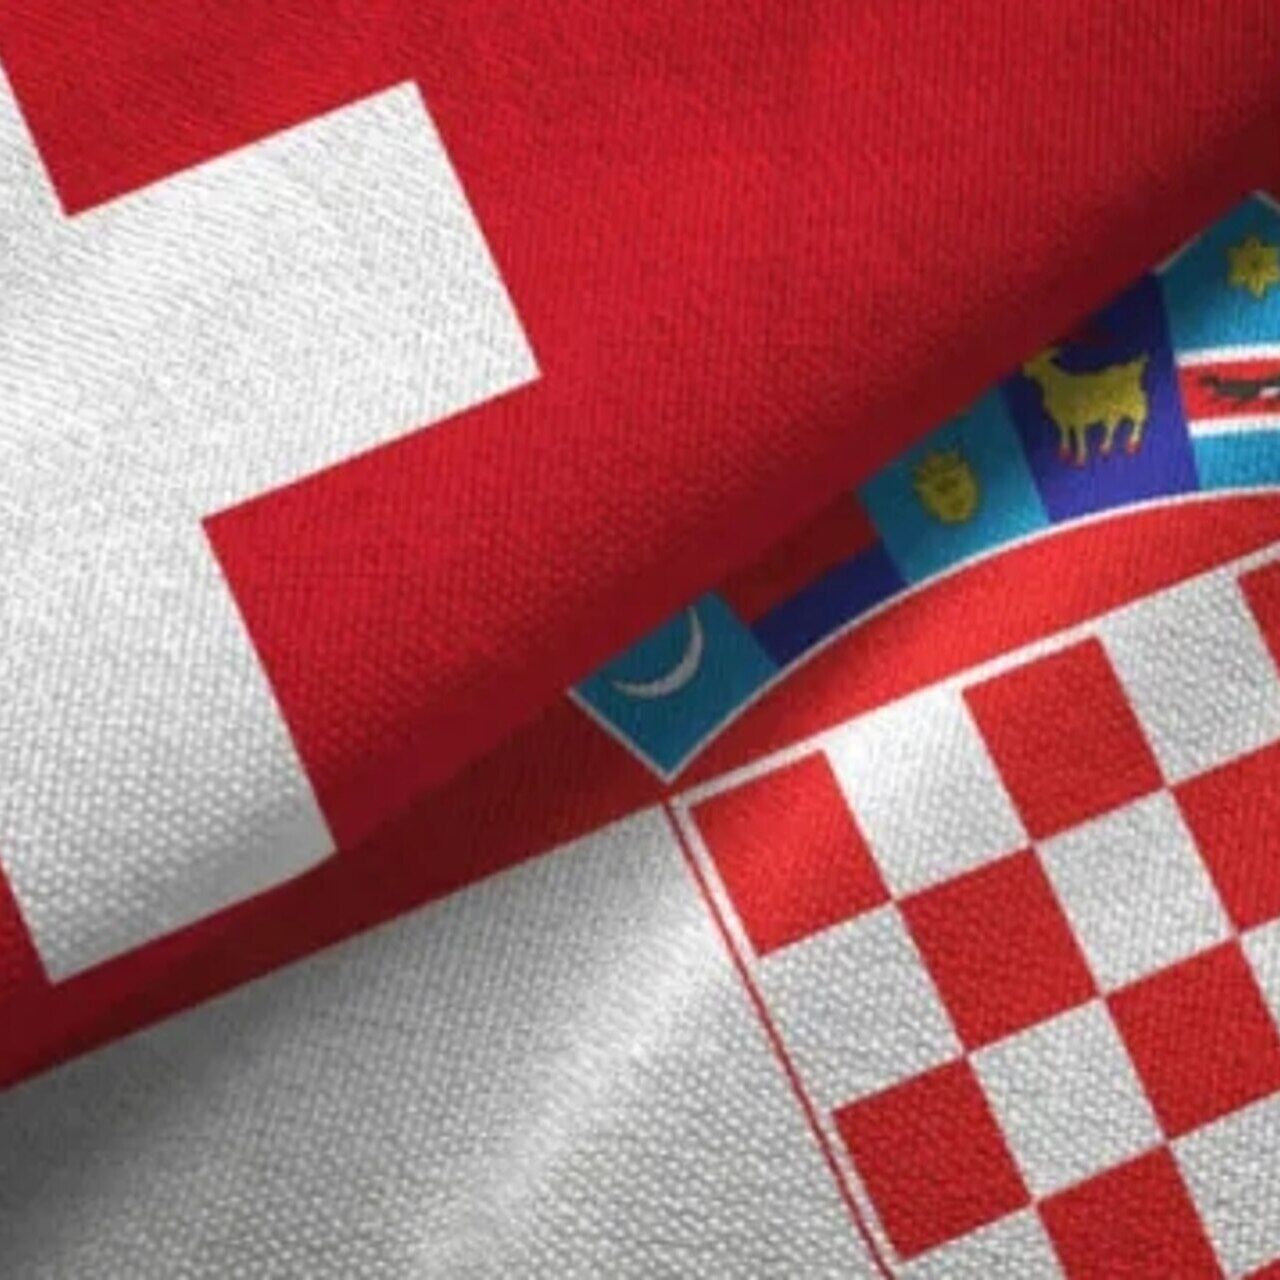 Berne-Zagreb : fusion graphique entre les drapeaux nationaux suisse et croate